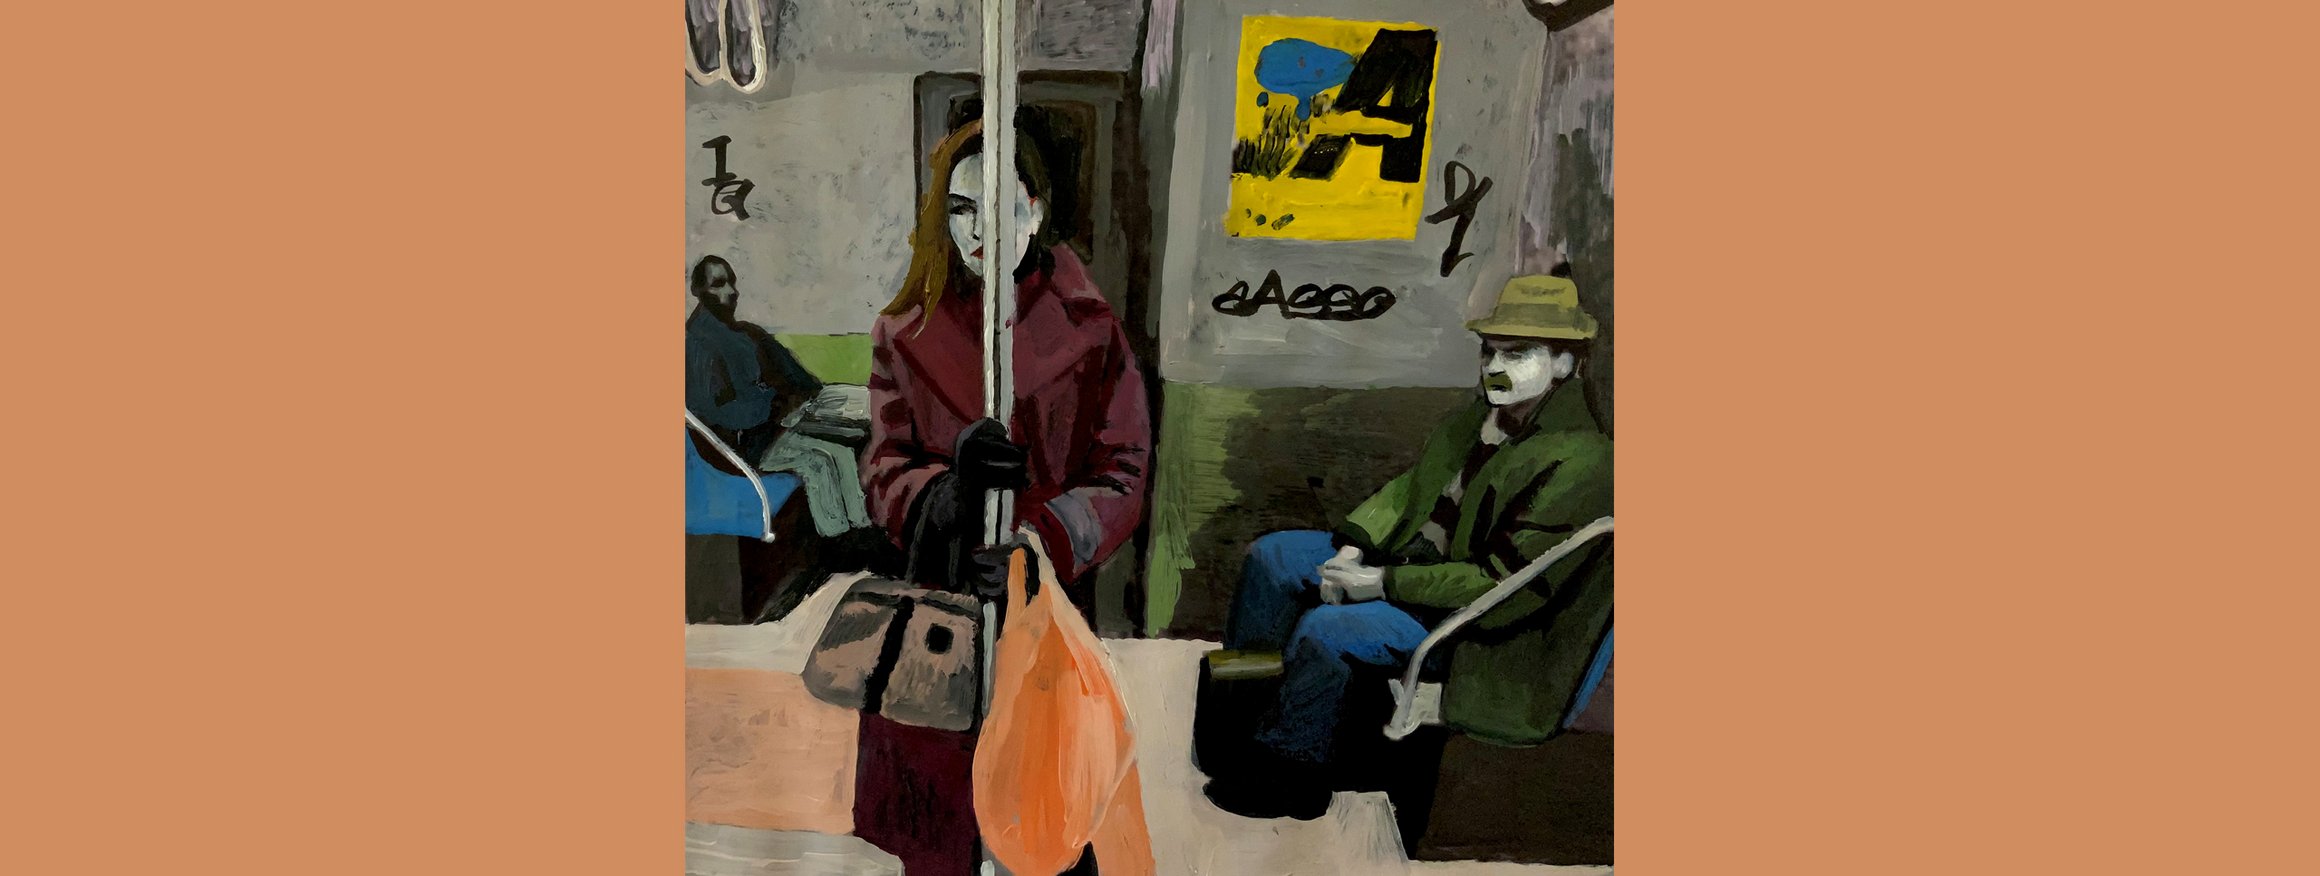 Die Illustration zeigt zwei Personen, die in einer Straßenbahn sitzen, und eine Frau, die steht und sich an der Stange festhält